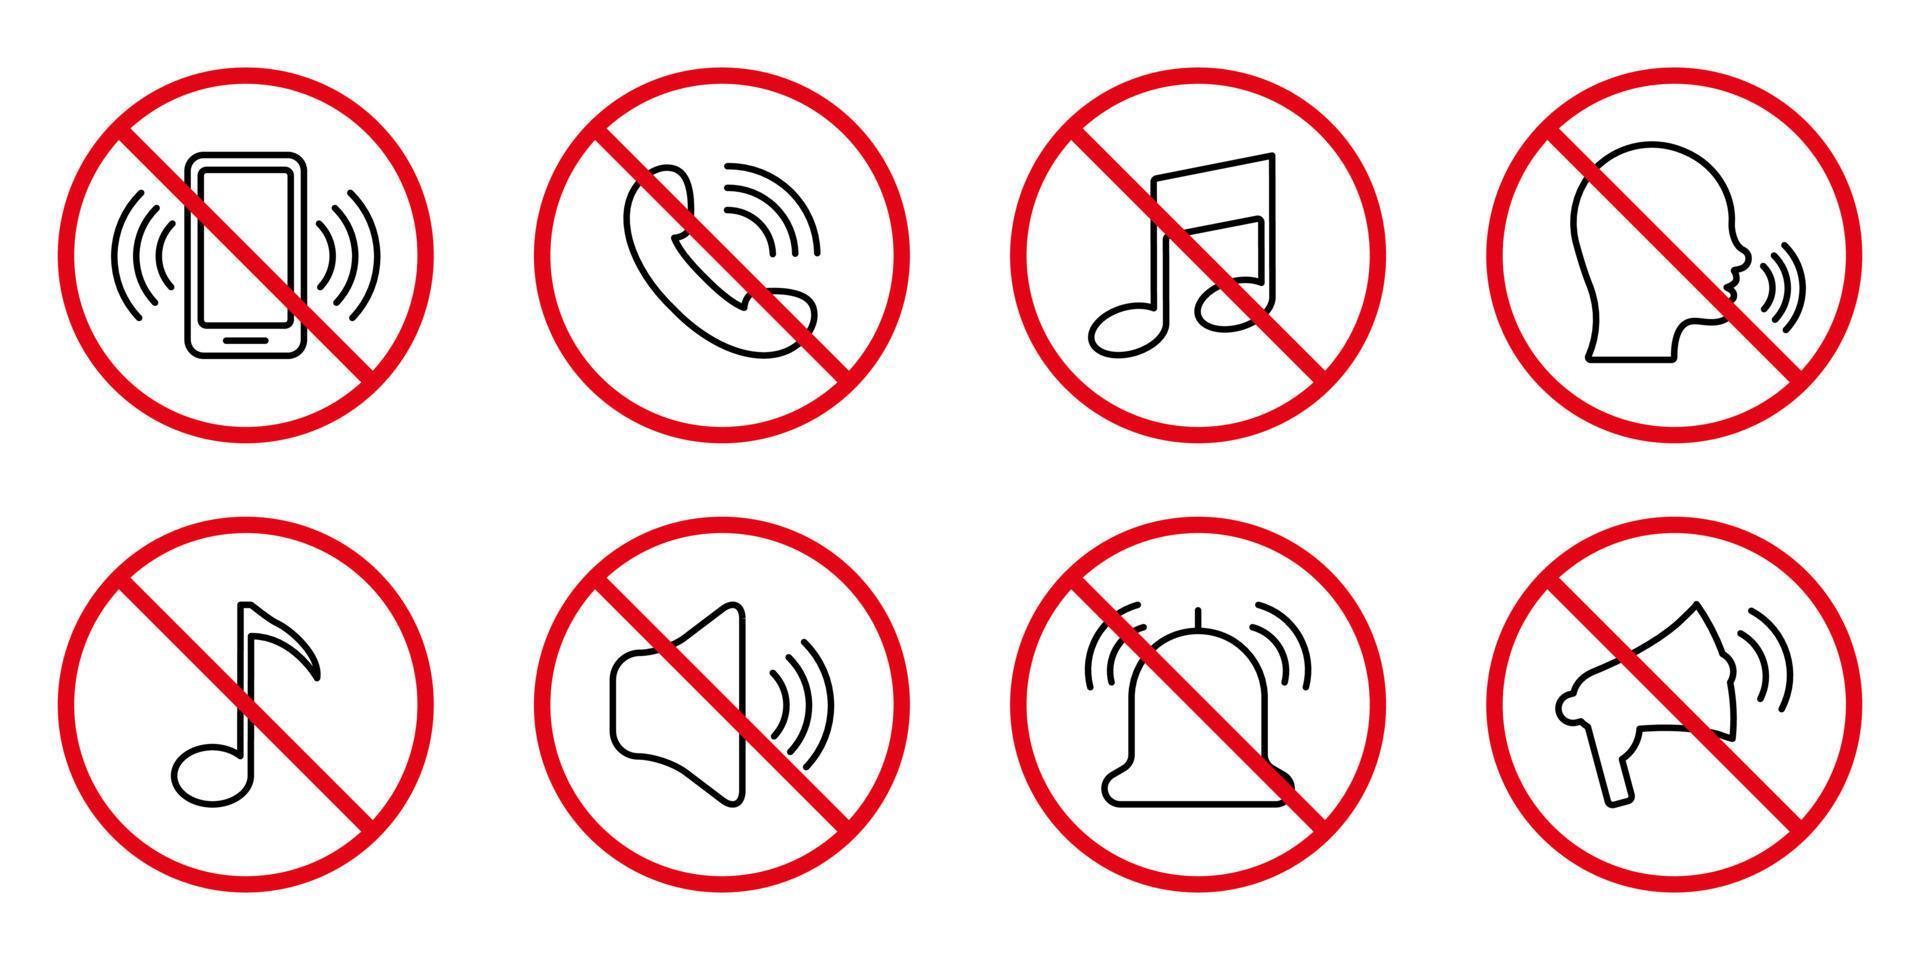 interdire le jeu d'icônes d'interdiction de la ligne noire de la voix sonore forte. pictogramme de contour sonore de haut-parleur de téléphone de bruit interdit. appeler le symbole d'arrêt rouge. remarquez le signe de mode silencieux de silence. illustration vectorielle isolée. vecteur